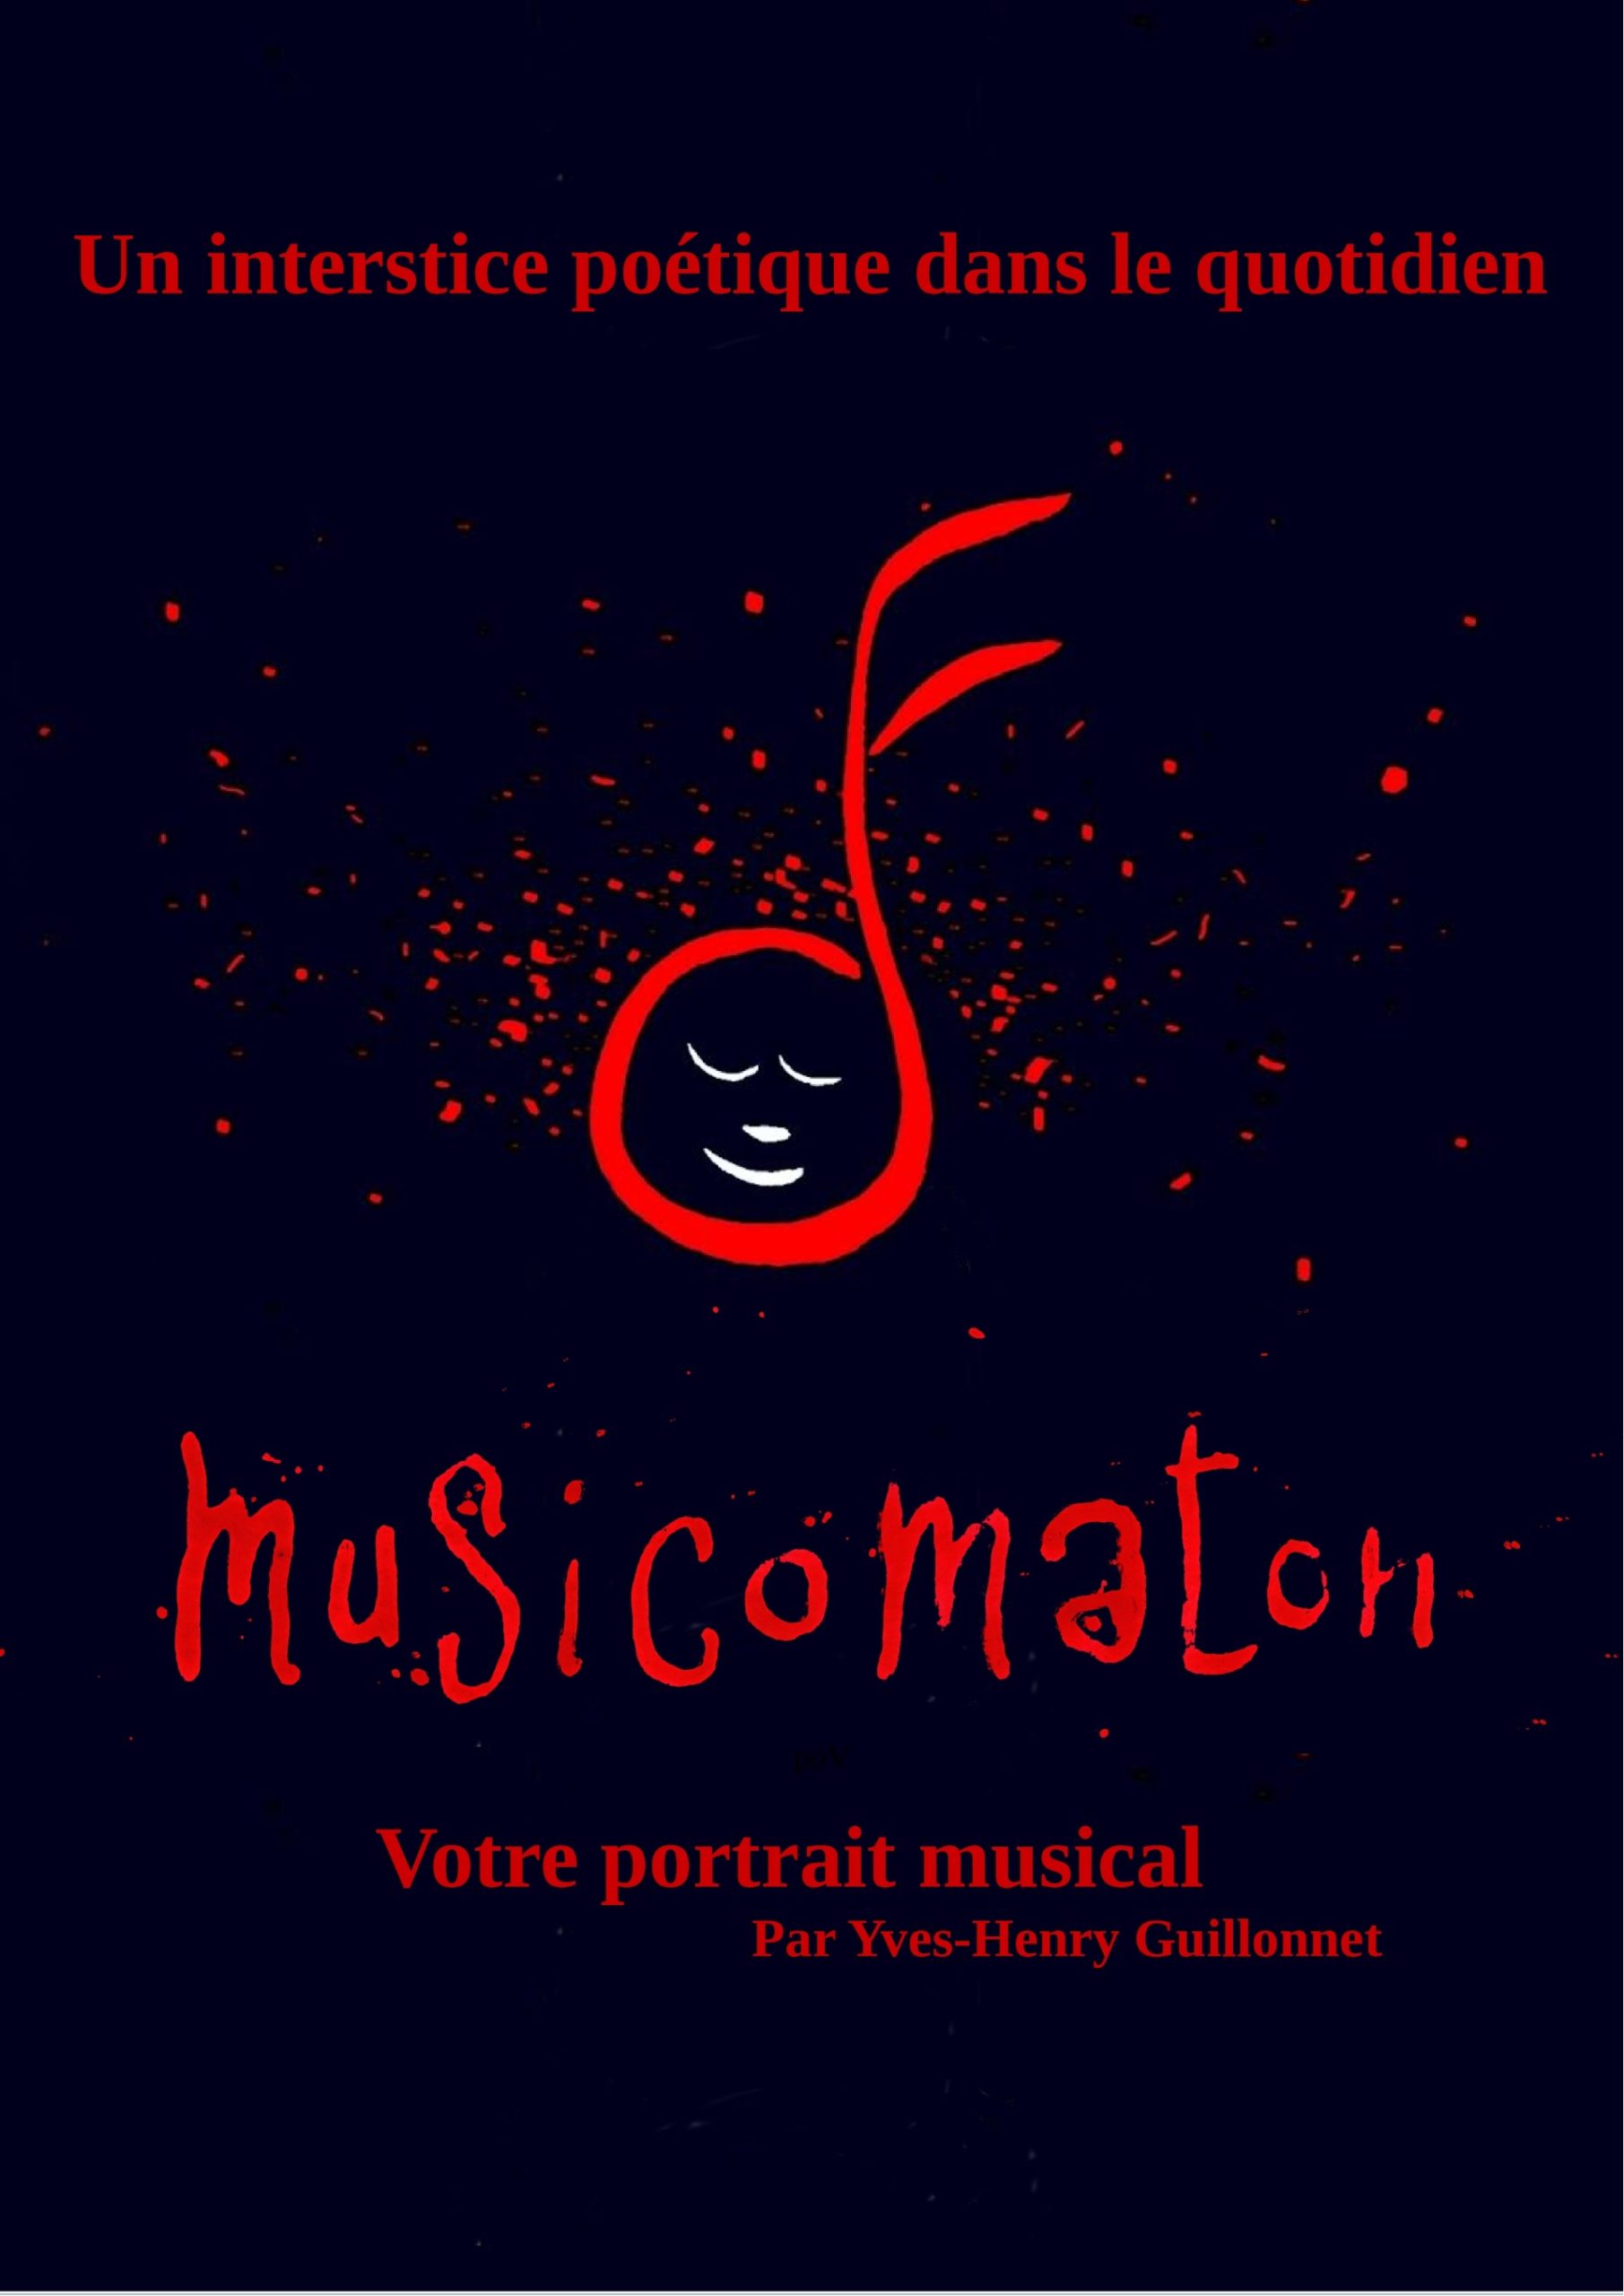 Visuel musicomaton 18_05_24 à la médiathèque de Trélazé